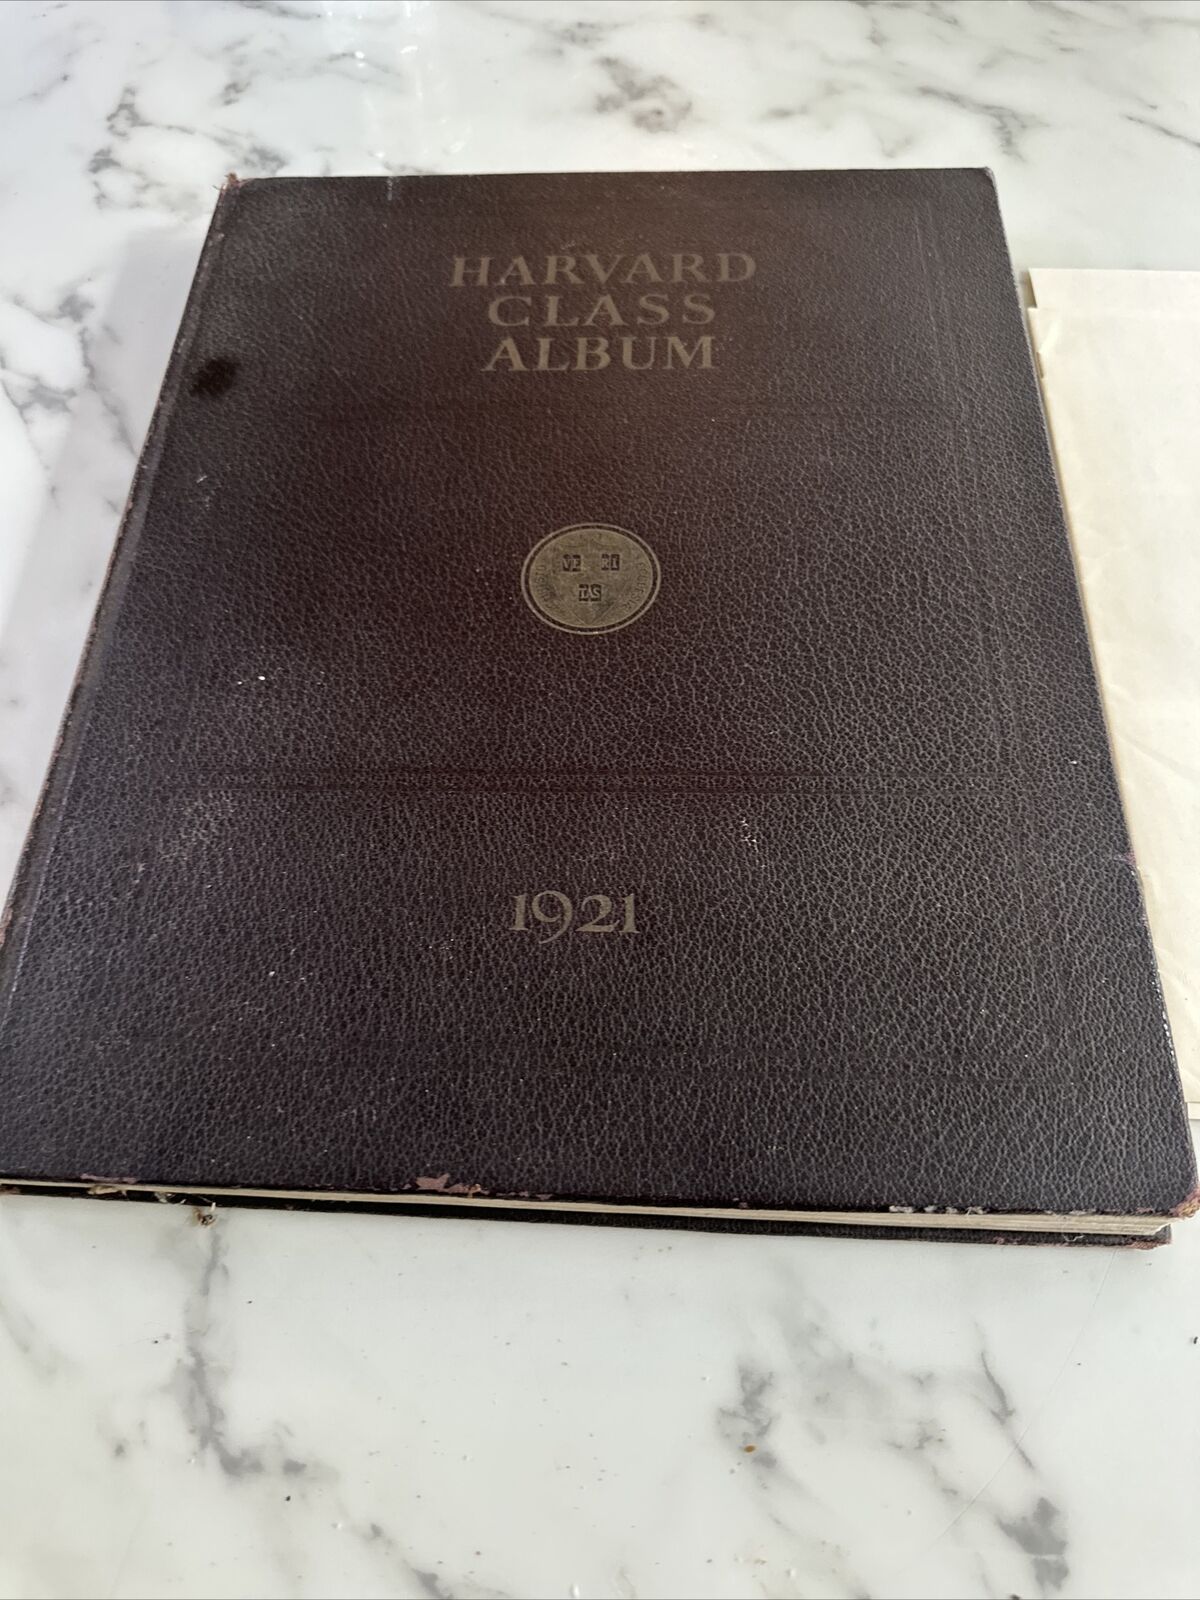 Harvard 1921 Class Yearbook “ Harvard Class Album